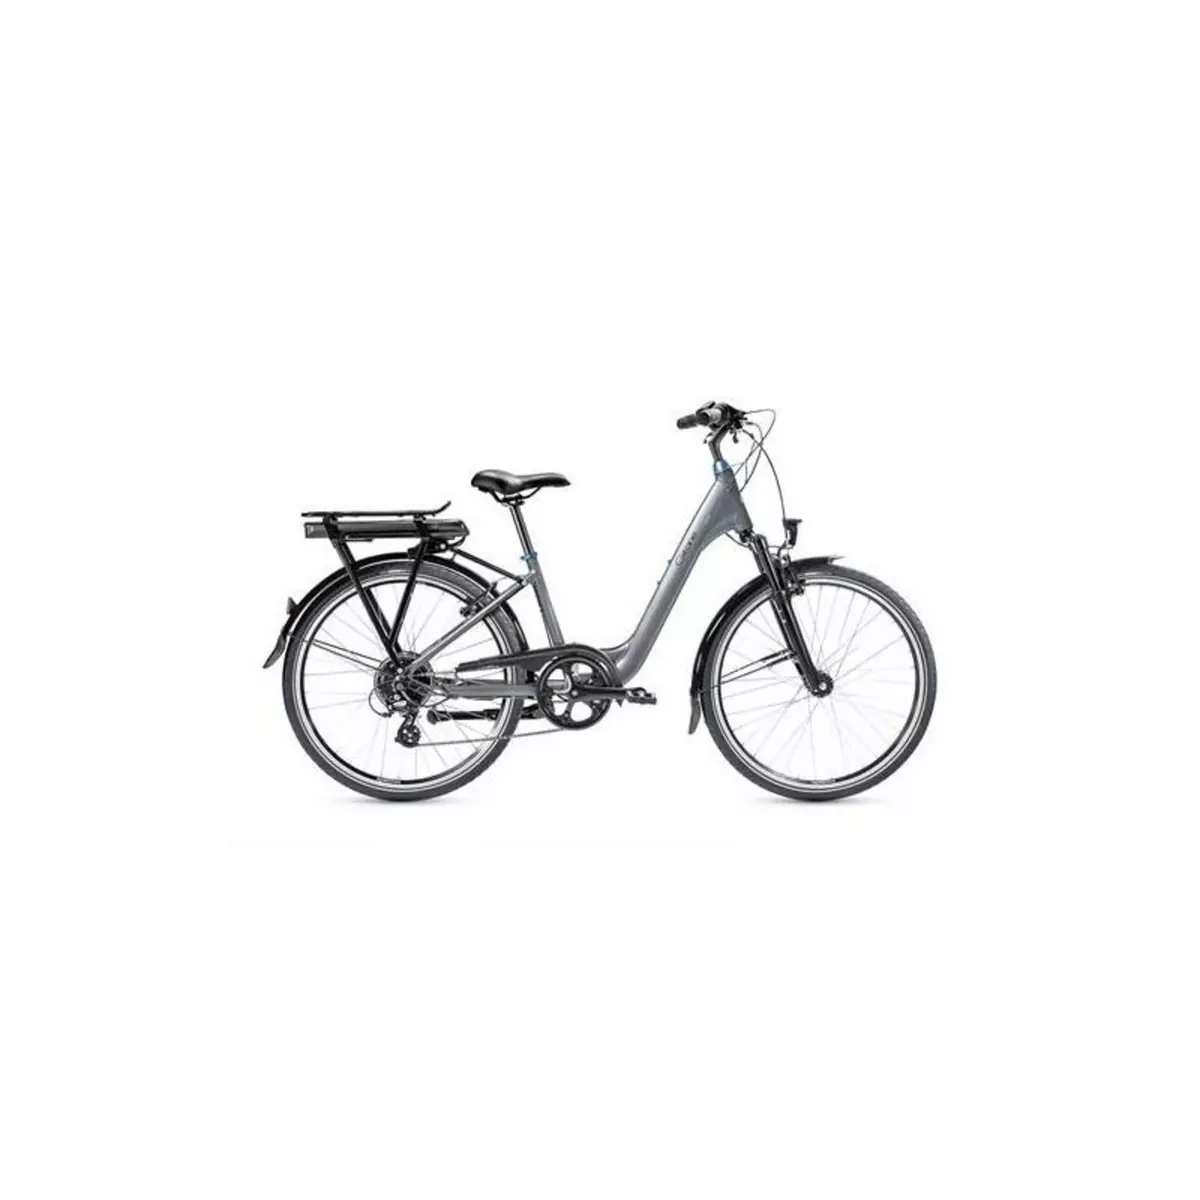  Vélo électrique Gitane Organ'e Bike XS T38 460 Wh YRG517 250 W Gris